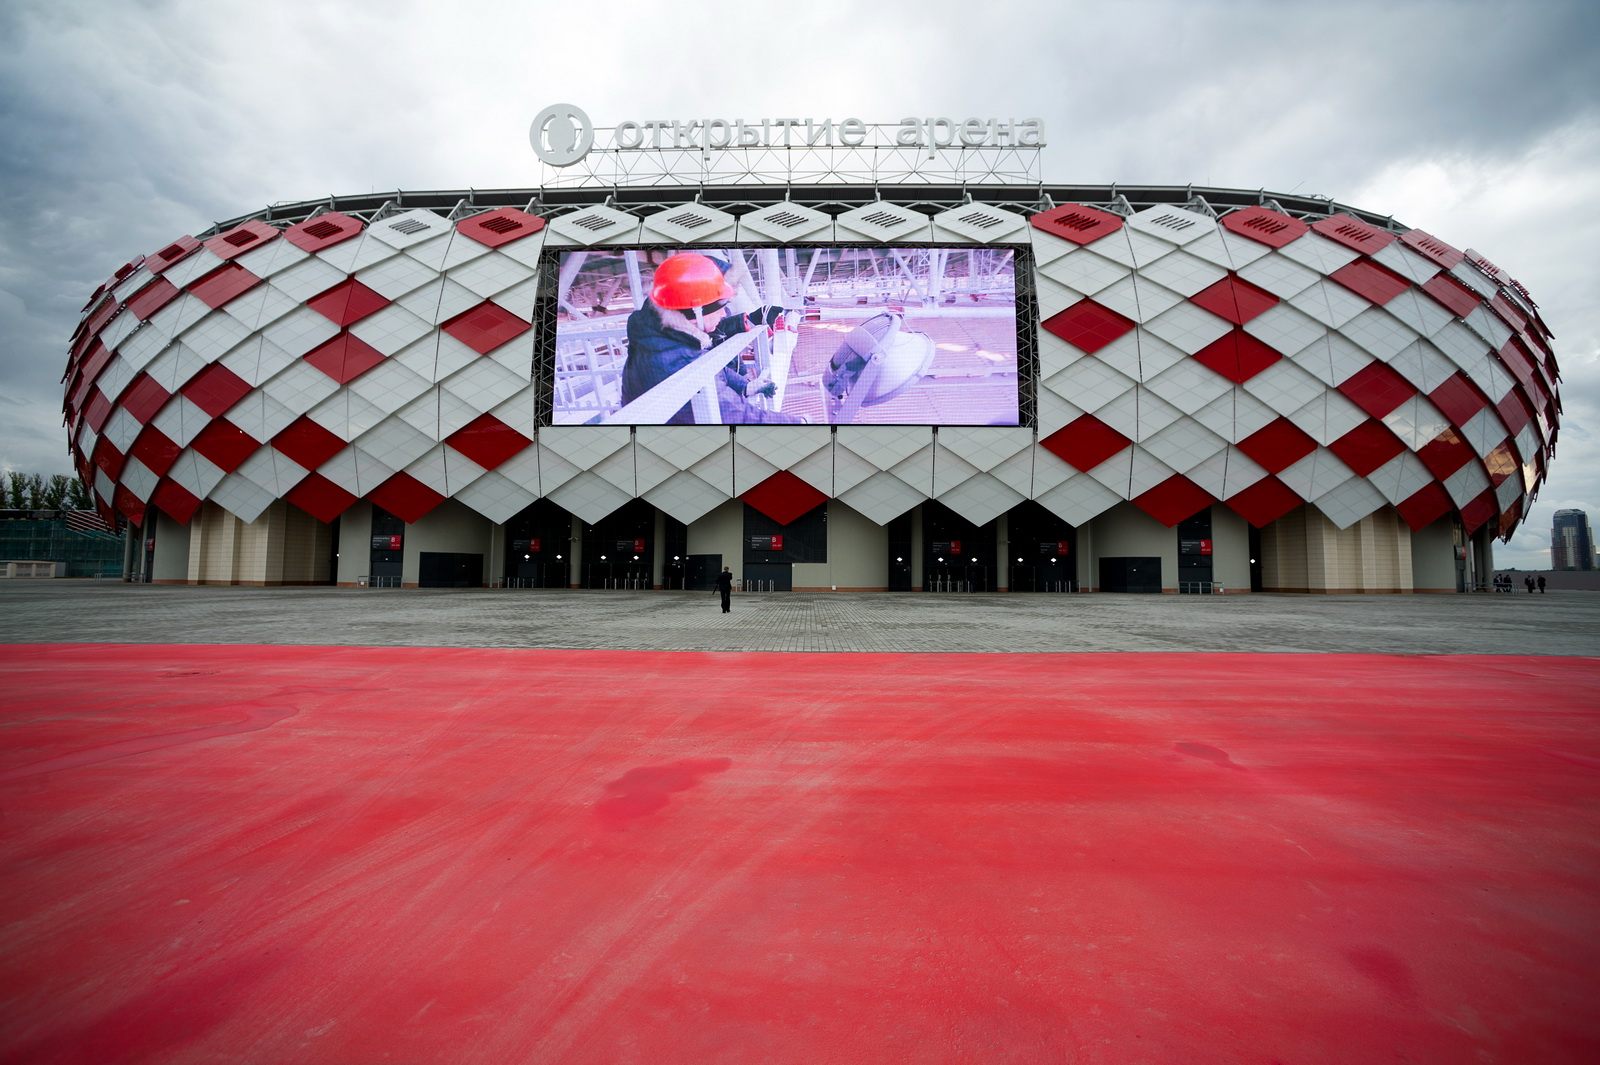 Stadium Spartak: Cracking Russian codes